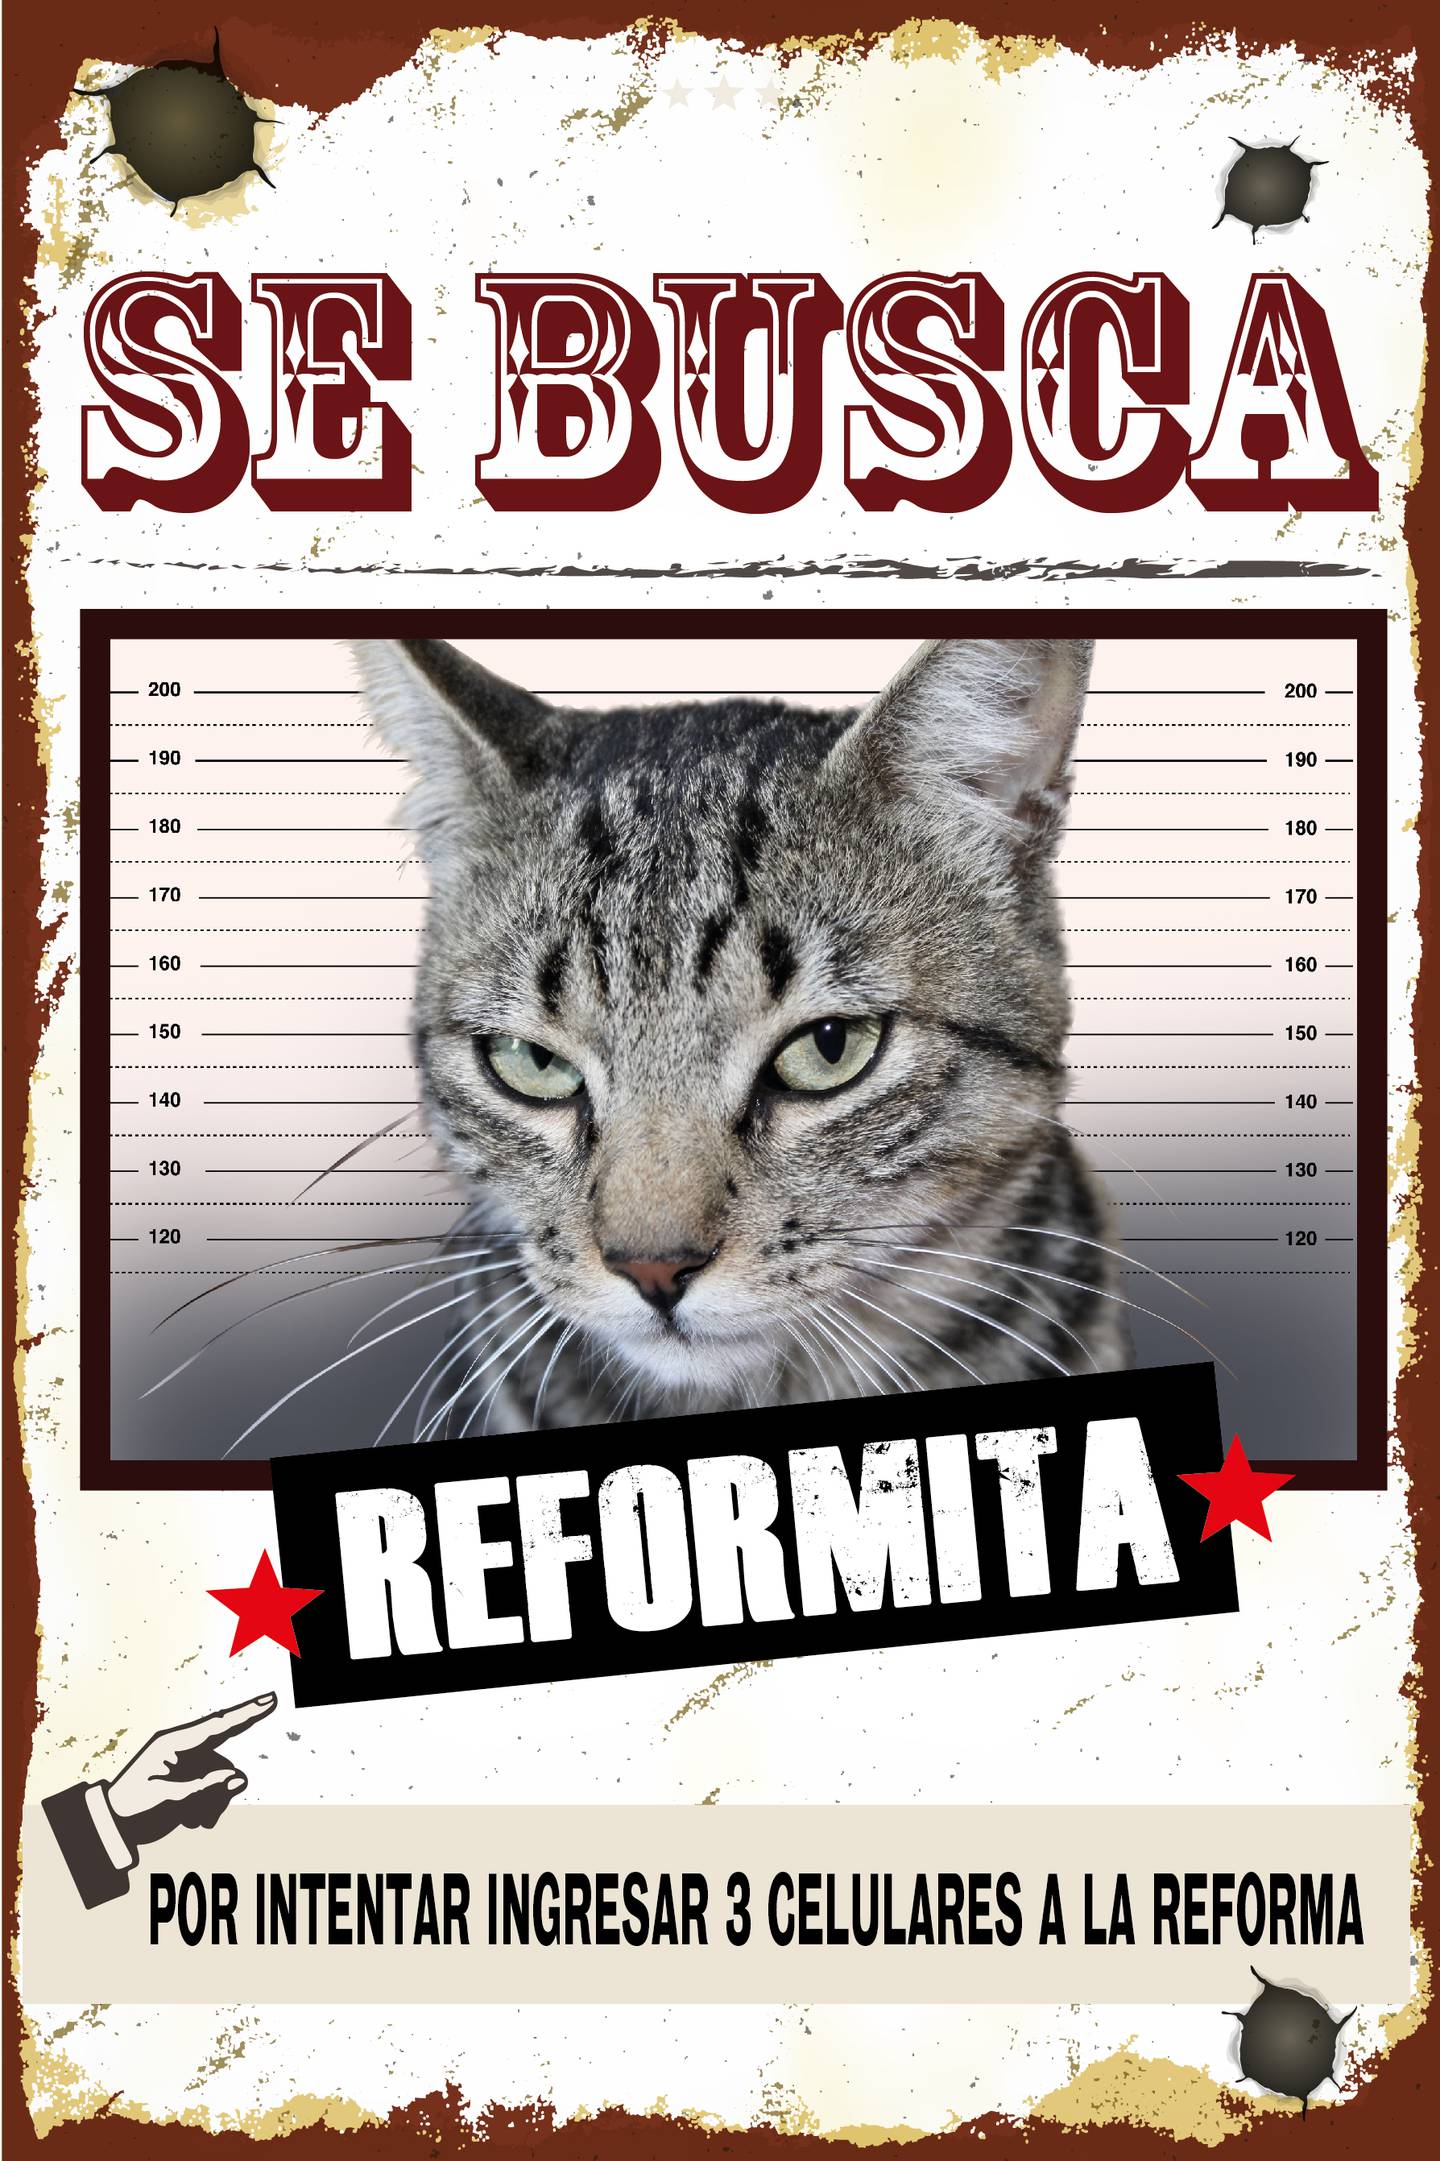 Capturan a gato que intentó ingresar a la cárcel de La Reforma con tres celulares pegados al cuerpo.